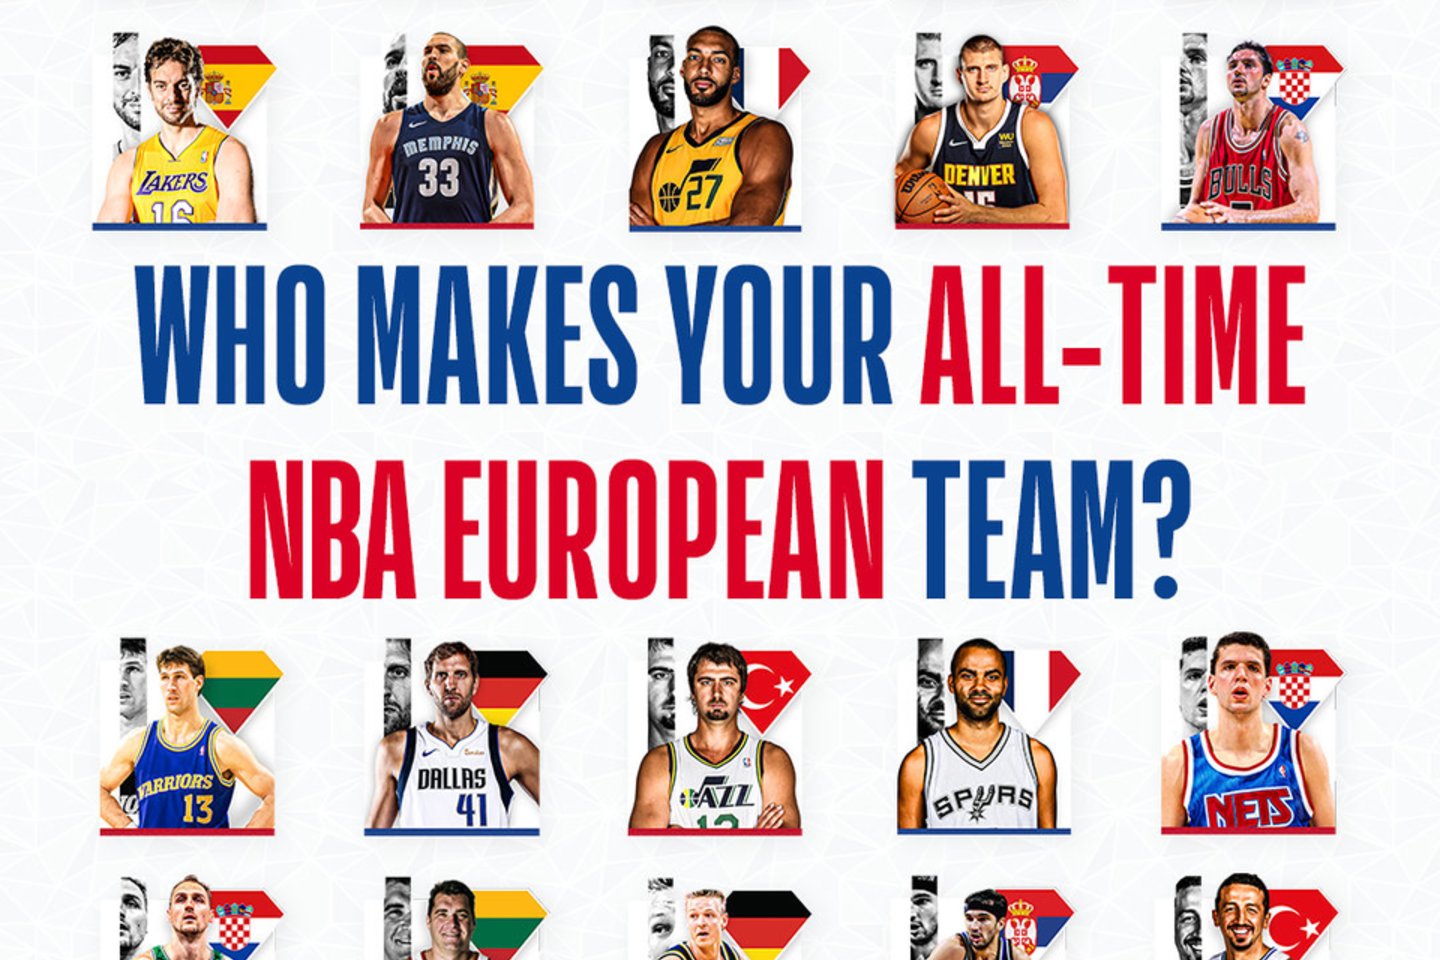  Renkami geriausiu NBA europiečiai, o tarp jų - du Lietuvos pretendentai.